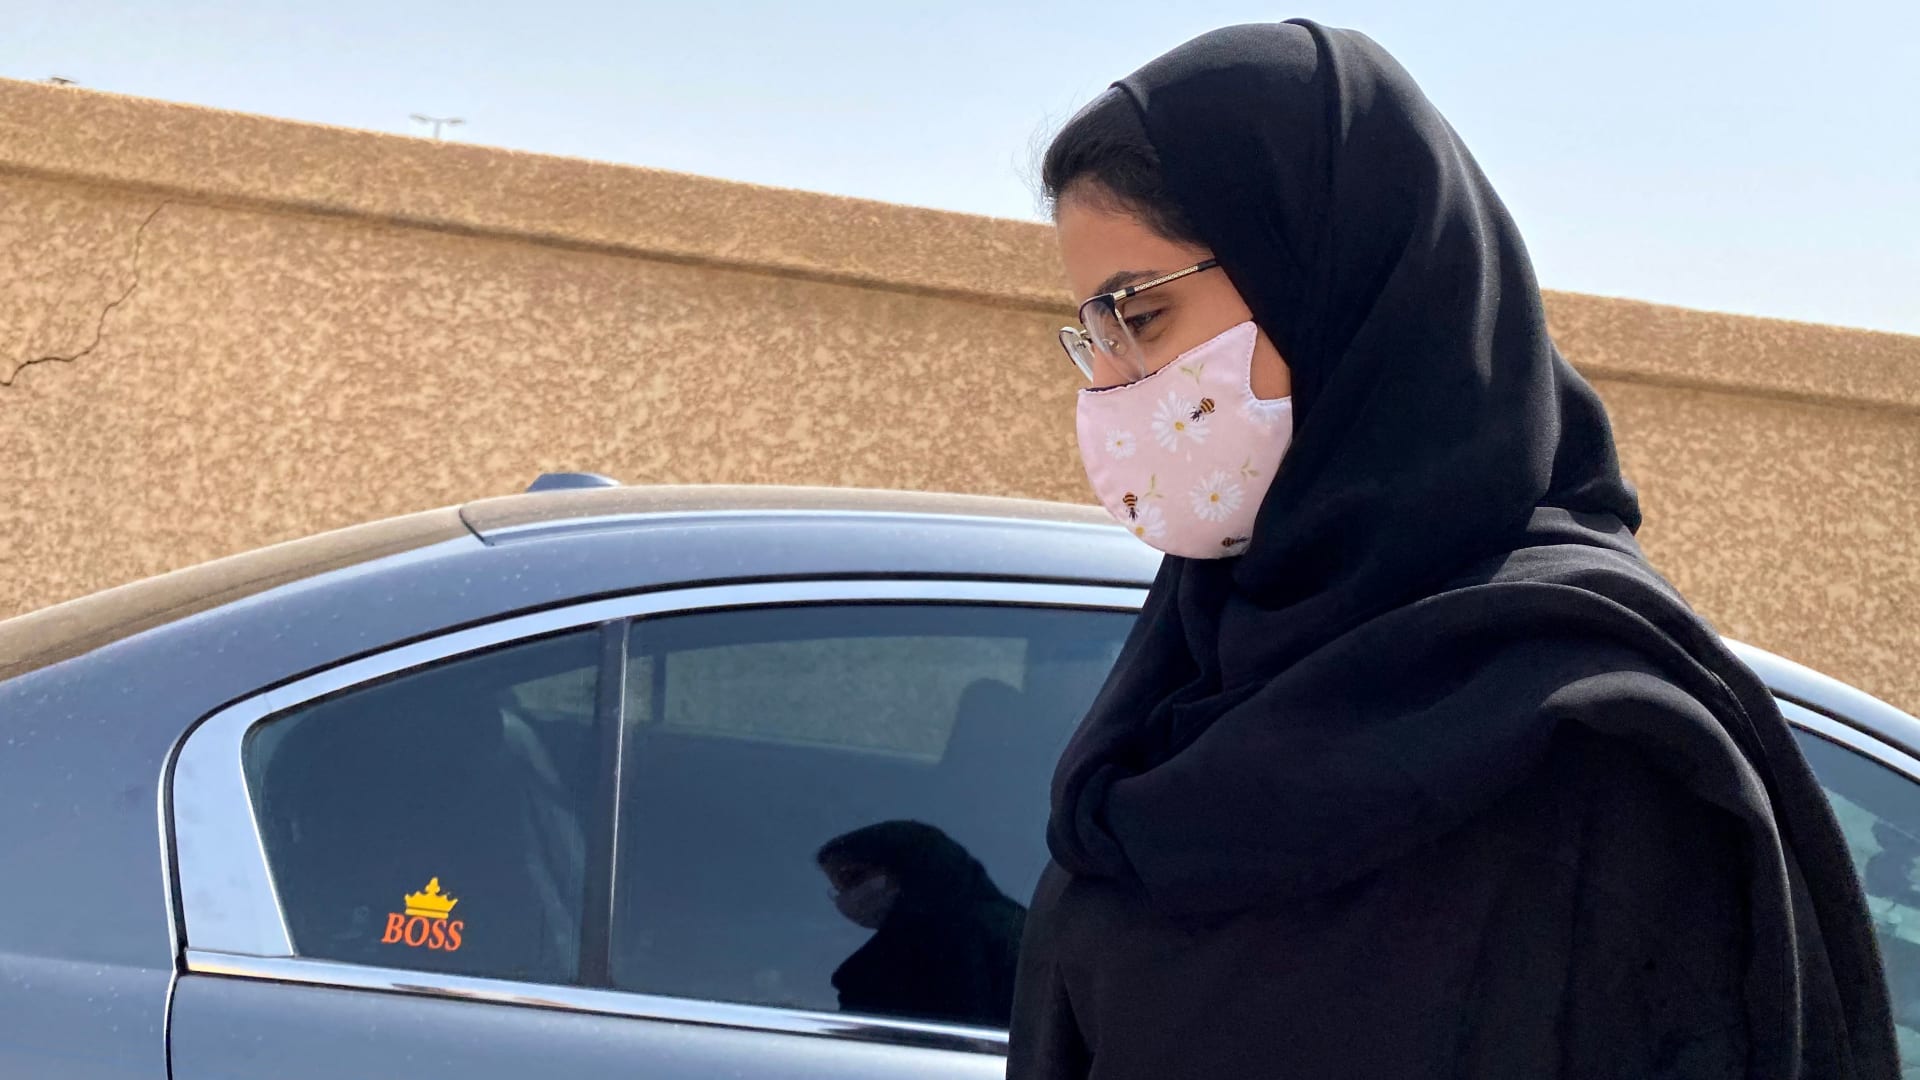 السعودية لجين الهذلول تعلق على فرض الجرعة الثالثة للقاح كورونا: "صبر جميل"